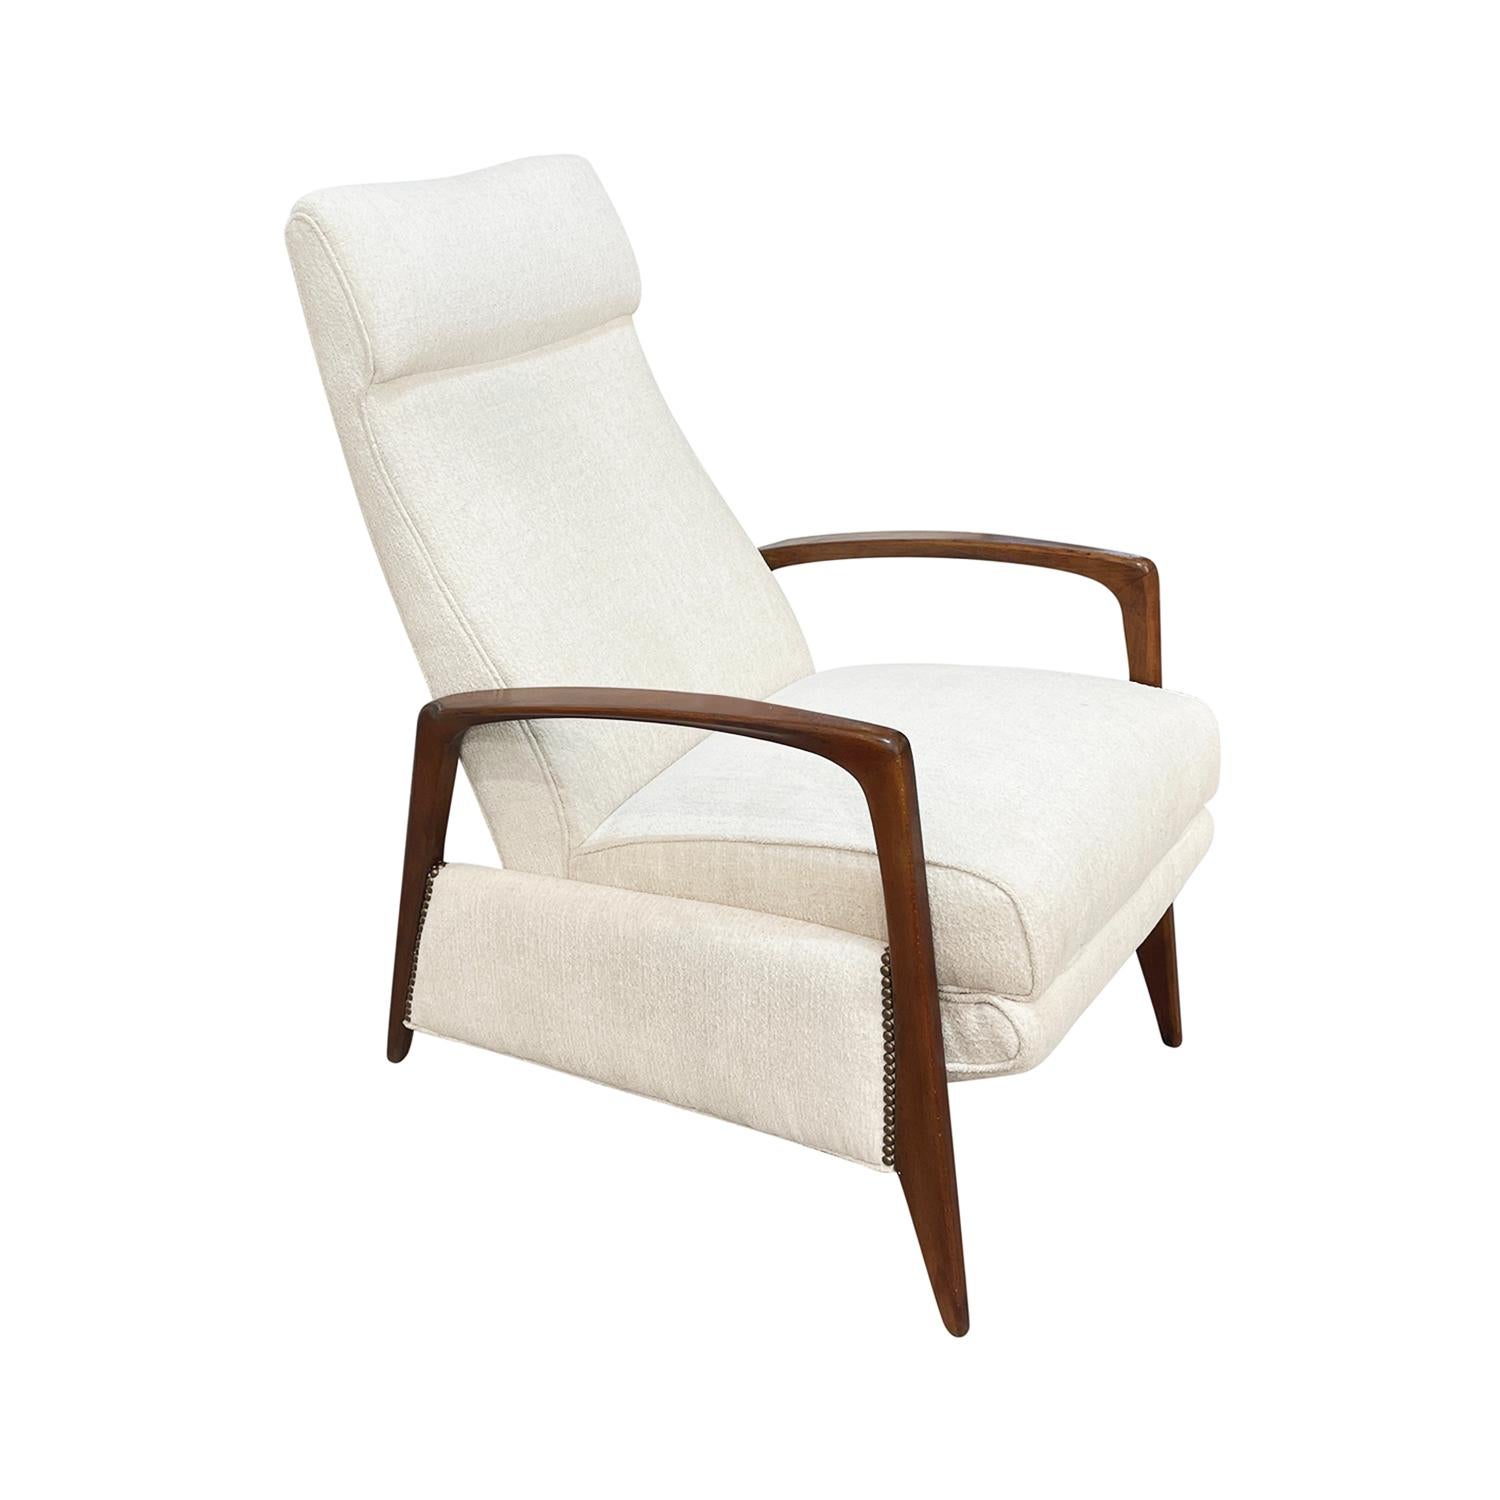 Ein Vintage Mid-Century moderne italienische Liegestuhl, Poltrona Relax aus handgefertigtem poliertem Nussbaum, hergestellt von ISA Bergamo in gutem Zustand. Der Lesesessel ist mit Messingnägeln verziert und verfügt über eine verstellbare,